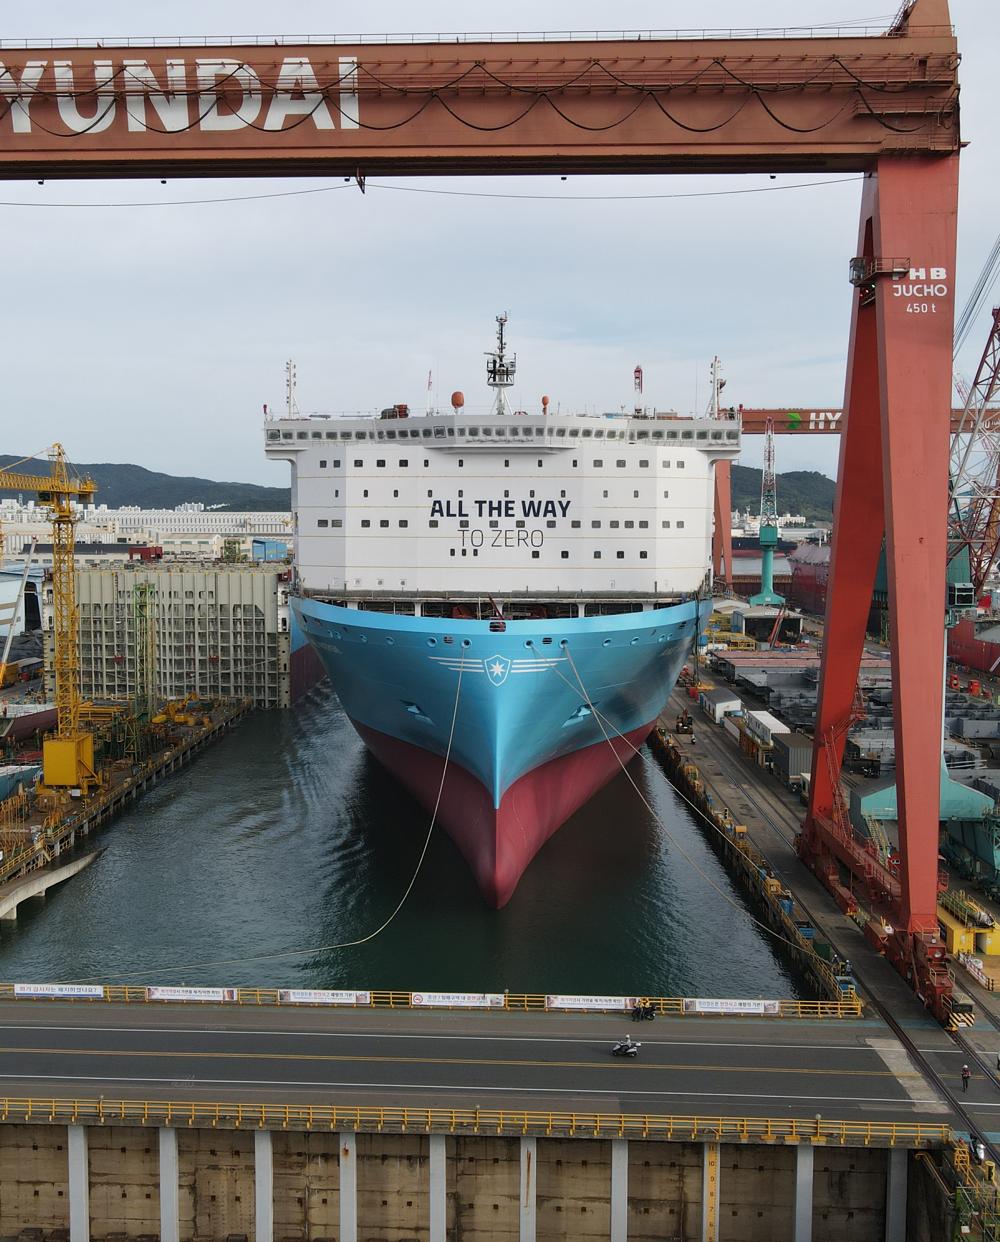 Det første af Mærsk-rederiets helt store containerskibe, som er forberedt til metanol-drift, er blevet navngivet ved en ceremoni på Hyundai Heavy Industries-skibsværftet i Ulsan, Sydkorea.